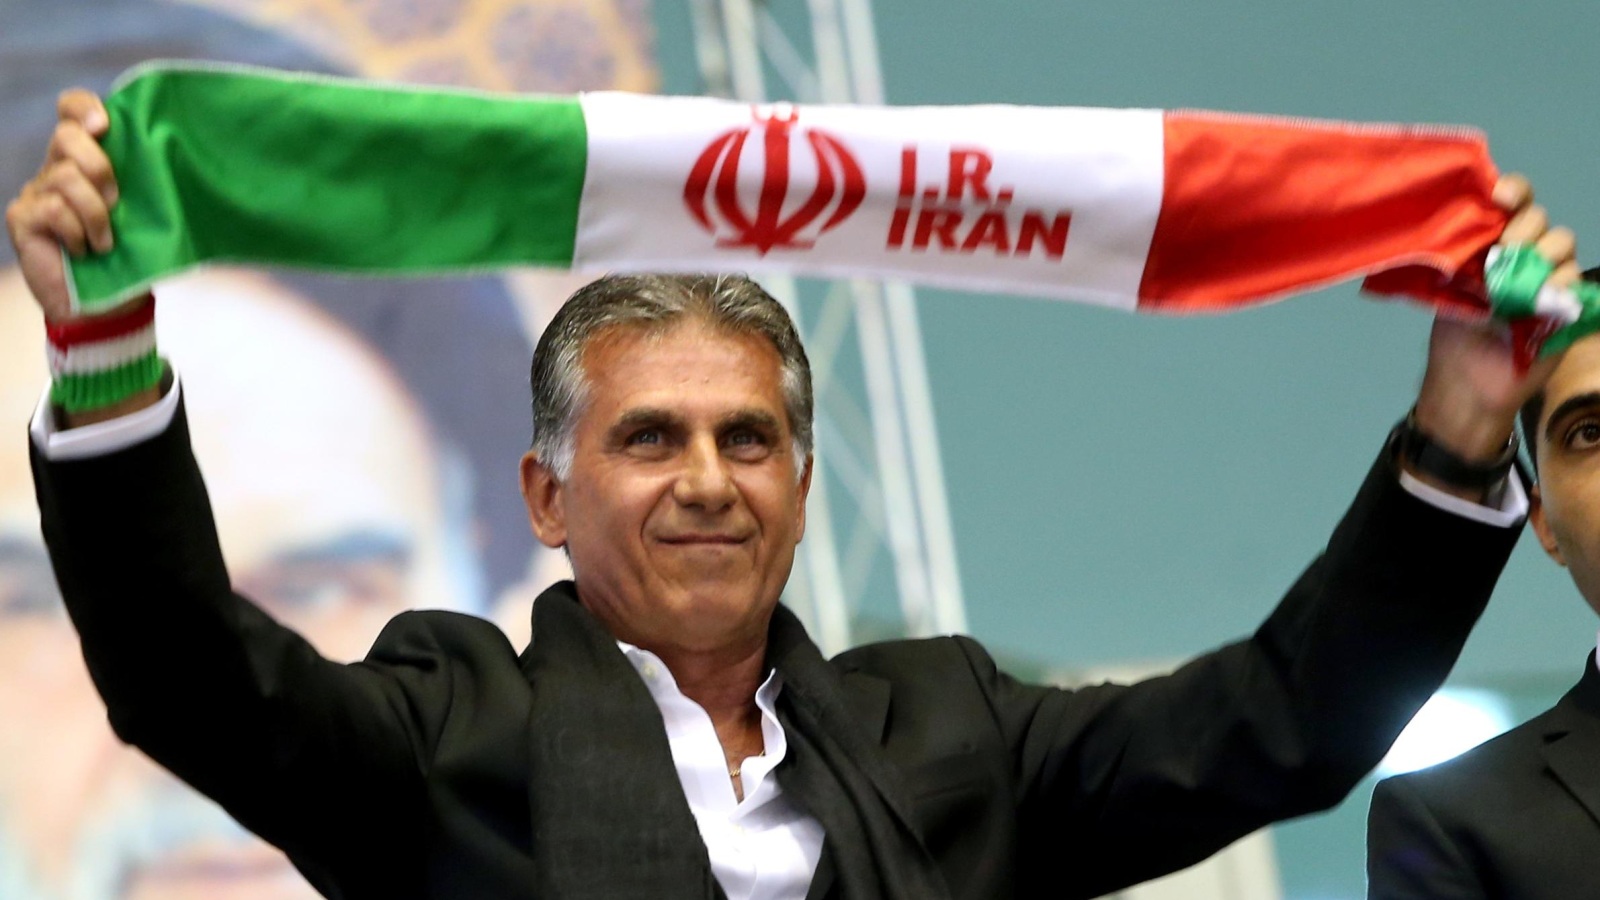 کی‌روش درگفت وگو با فرانس فوتبال:با ایران قرارداد دارم و سرمربی الجزایر نمی شوم